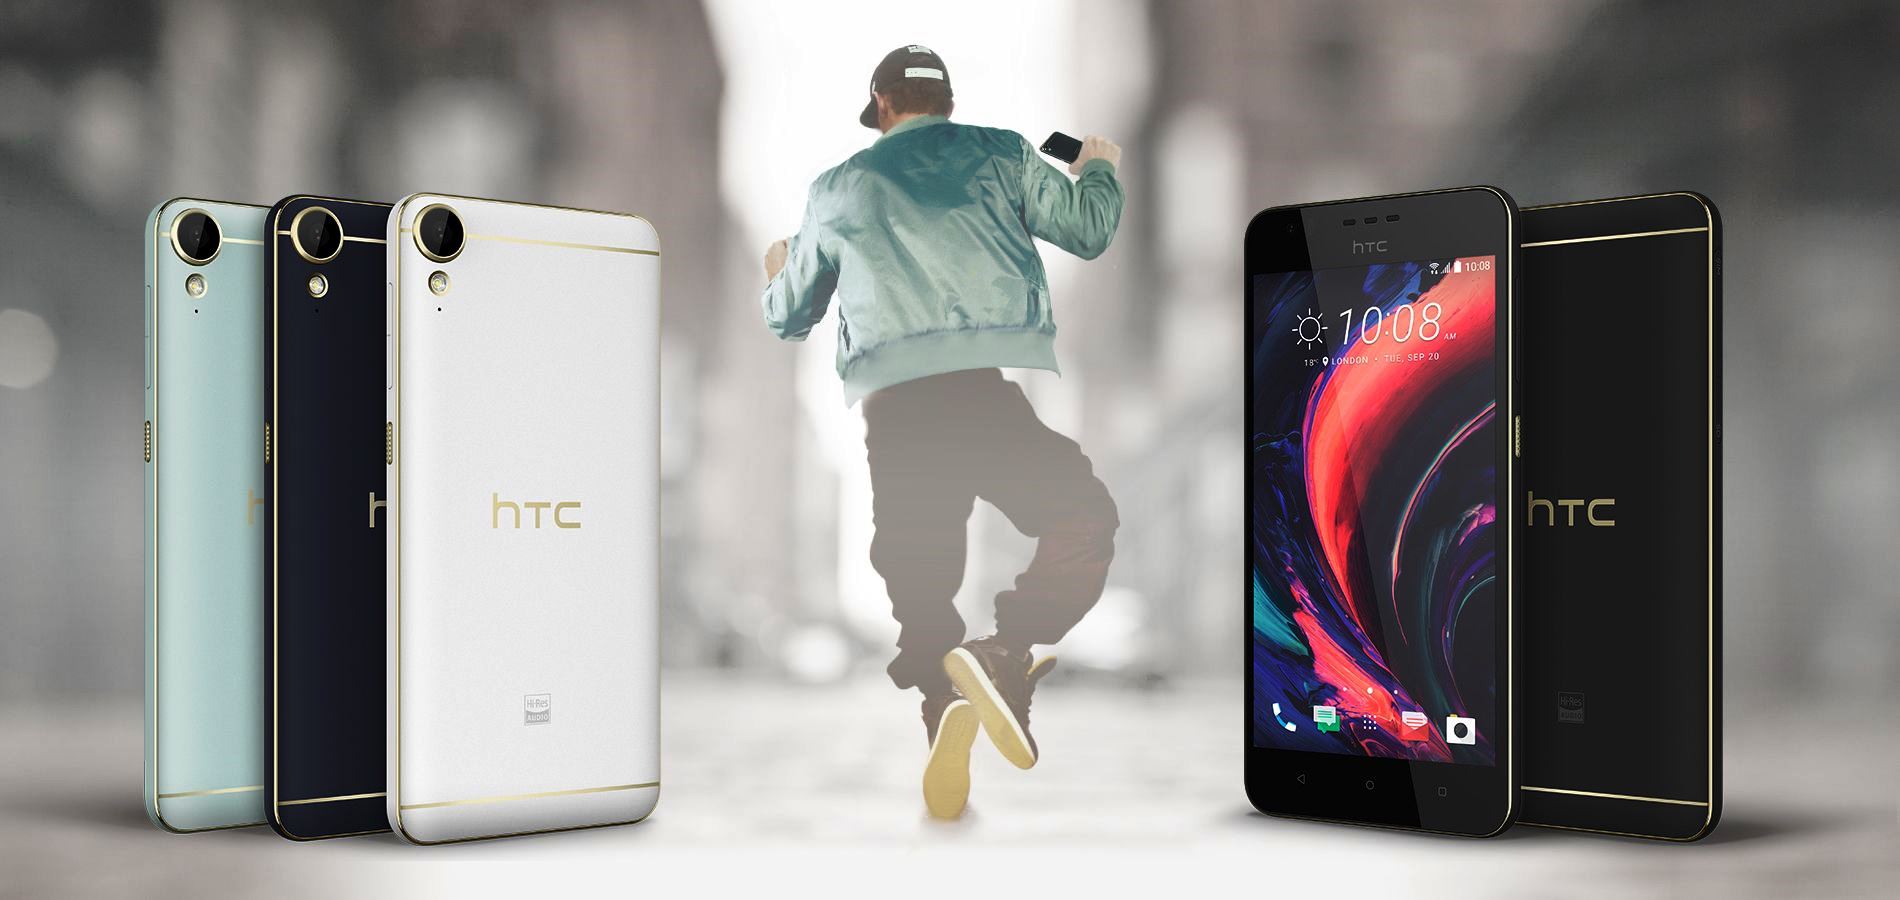 HTC Desire 10 Lifestyle e Desire 10 Pro annunciati ufficialmente